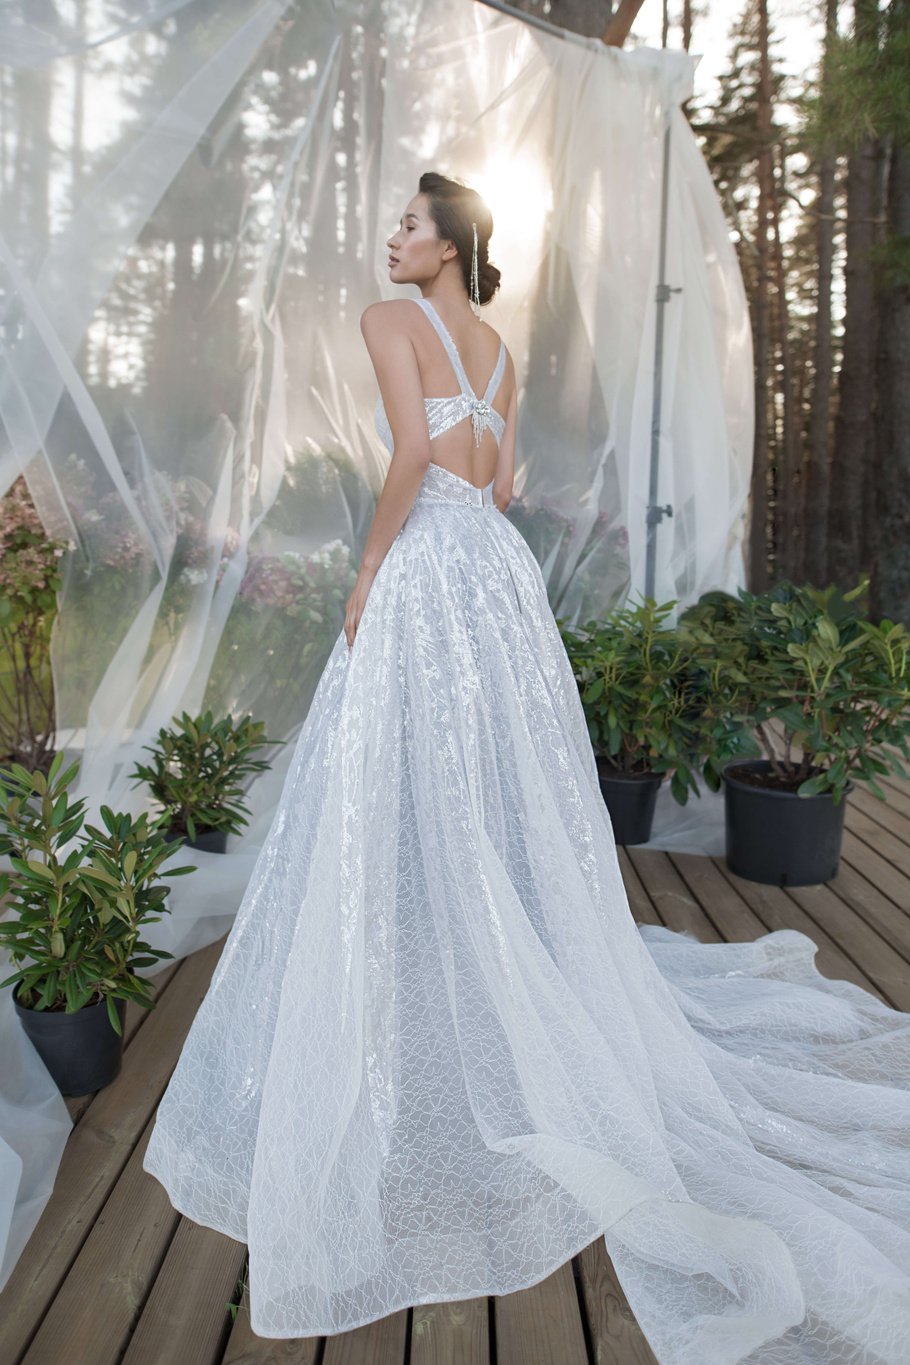 Купить свадебное платье «Кристоф» Бламмо Биамо из коллекции Нимфа 2020 года в Екатеринбурге